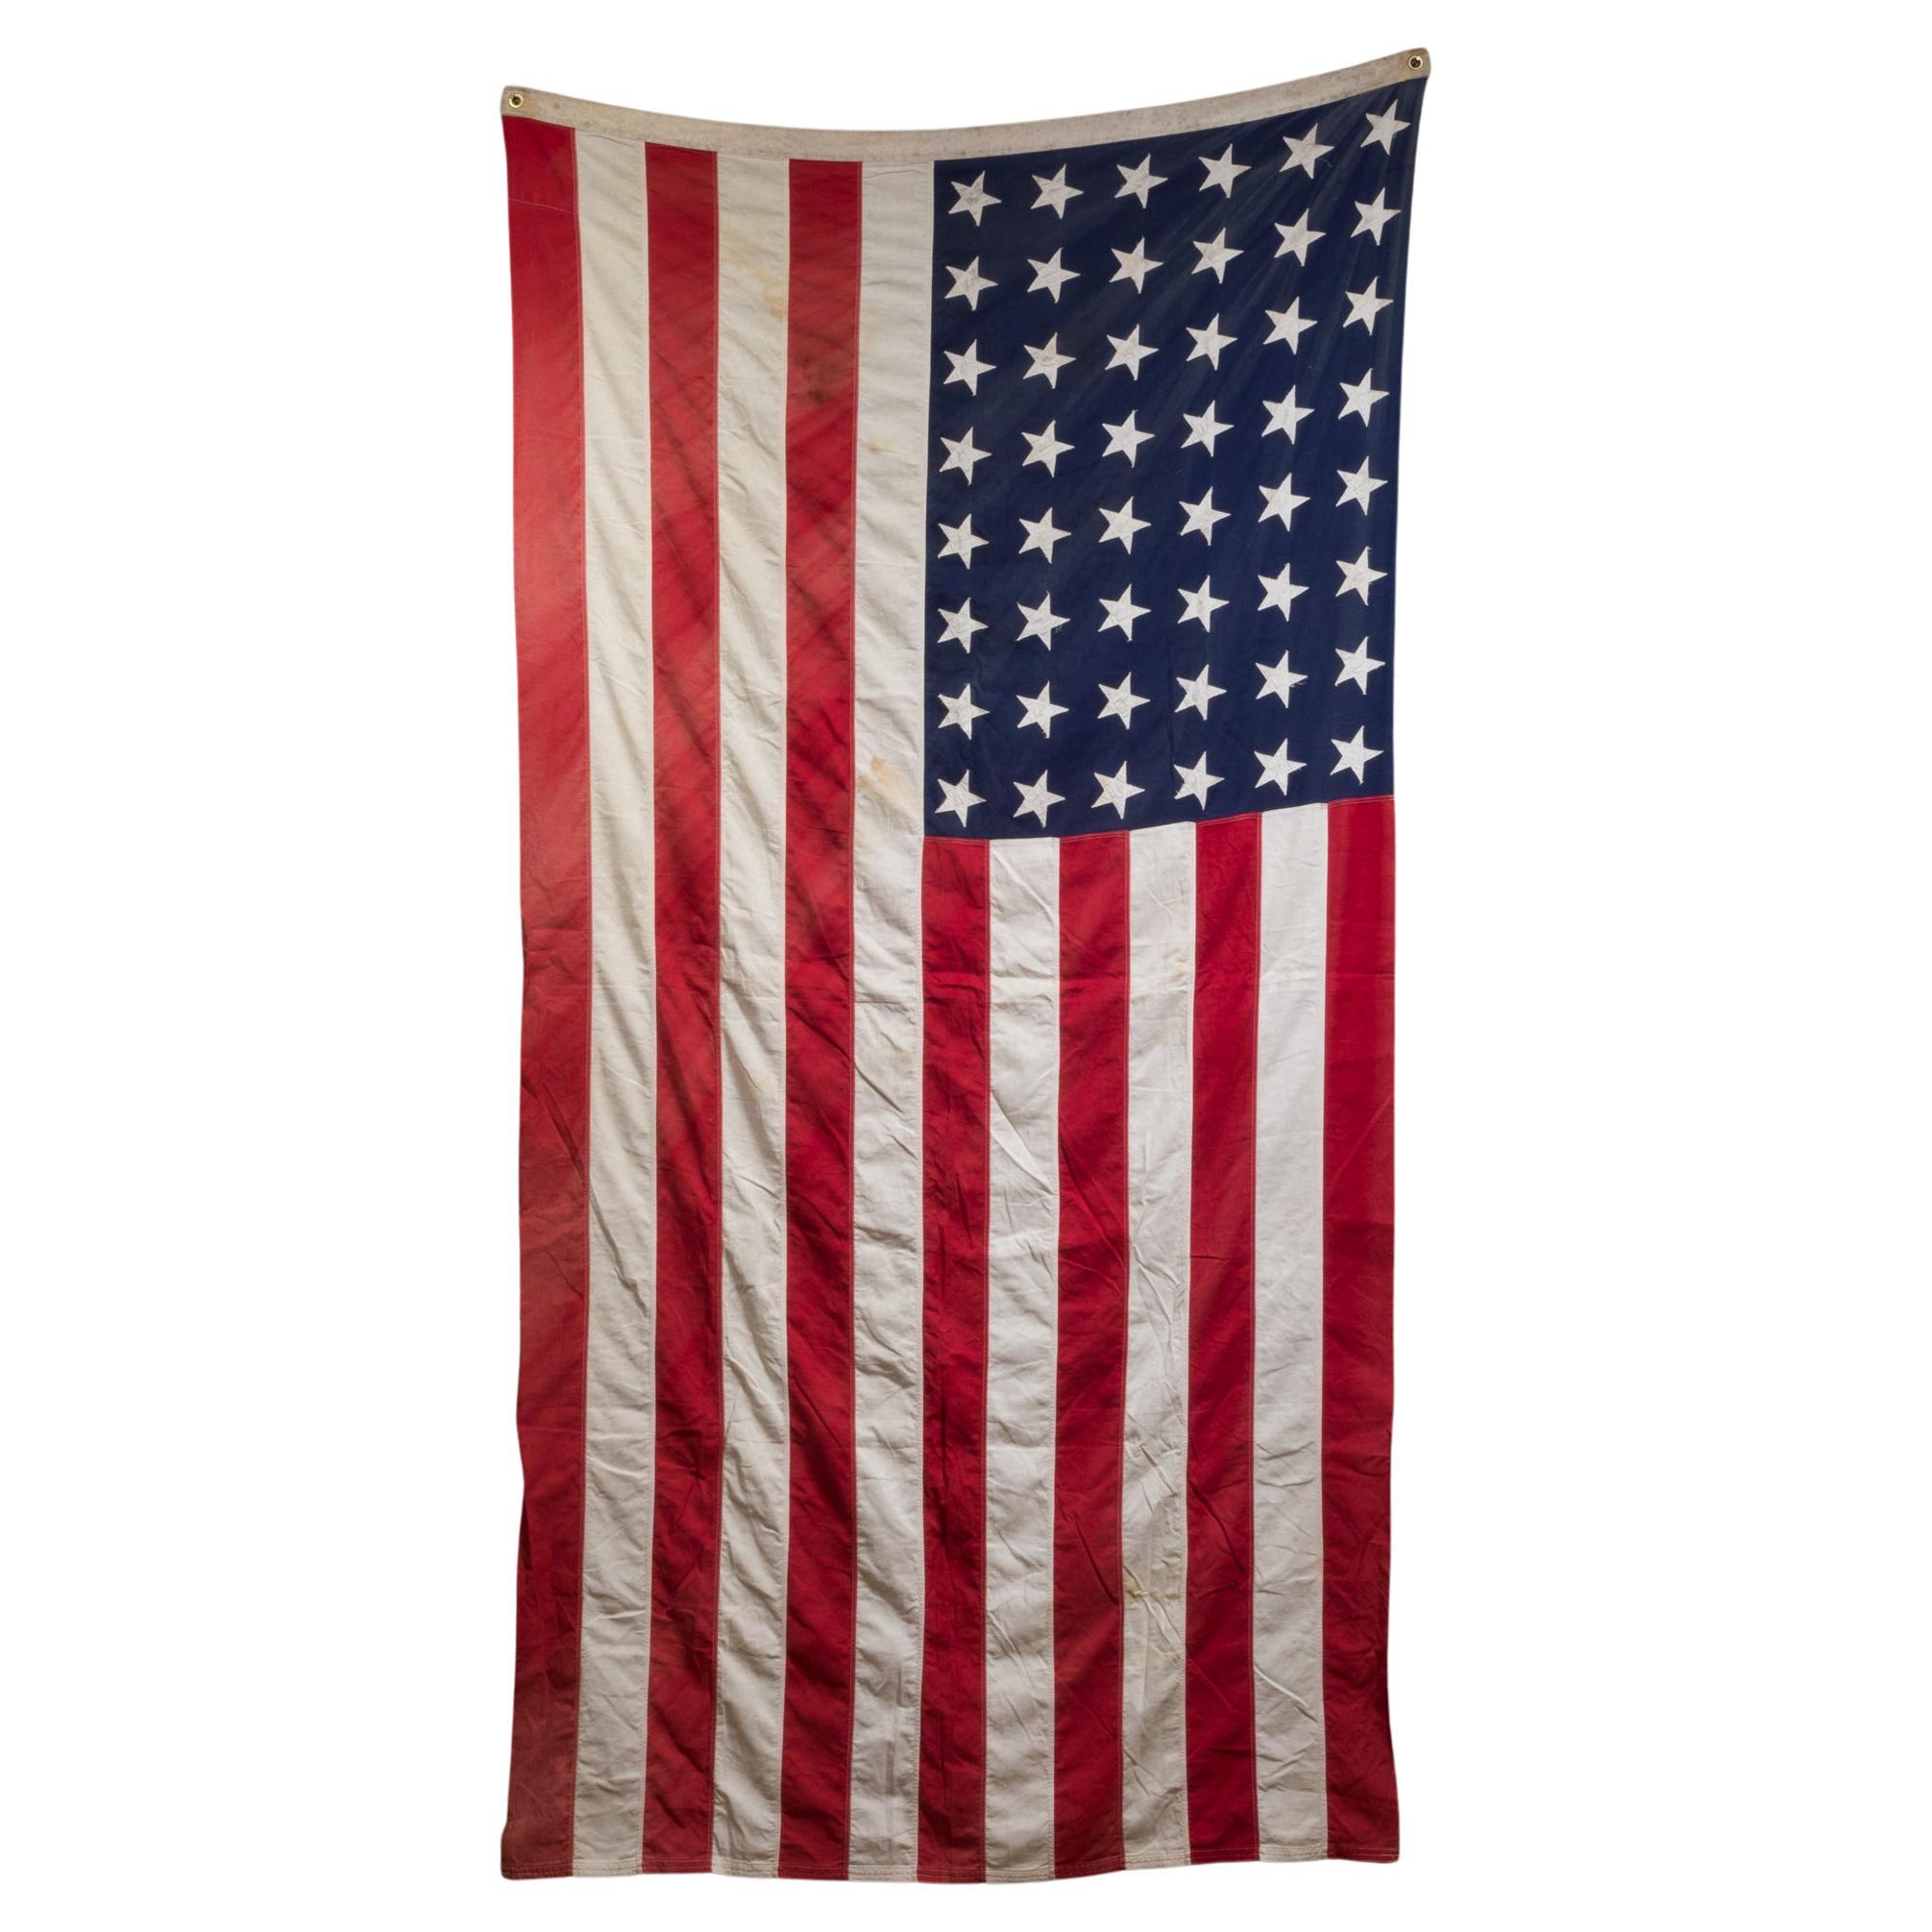 Monumentale amerikanische Flagge des frühen 20. Jahrhunderts mit 48 Sternen, ca. 1940-1950